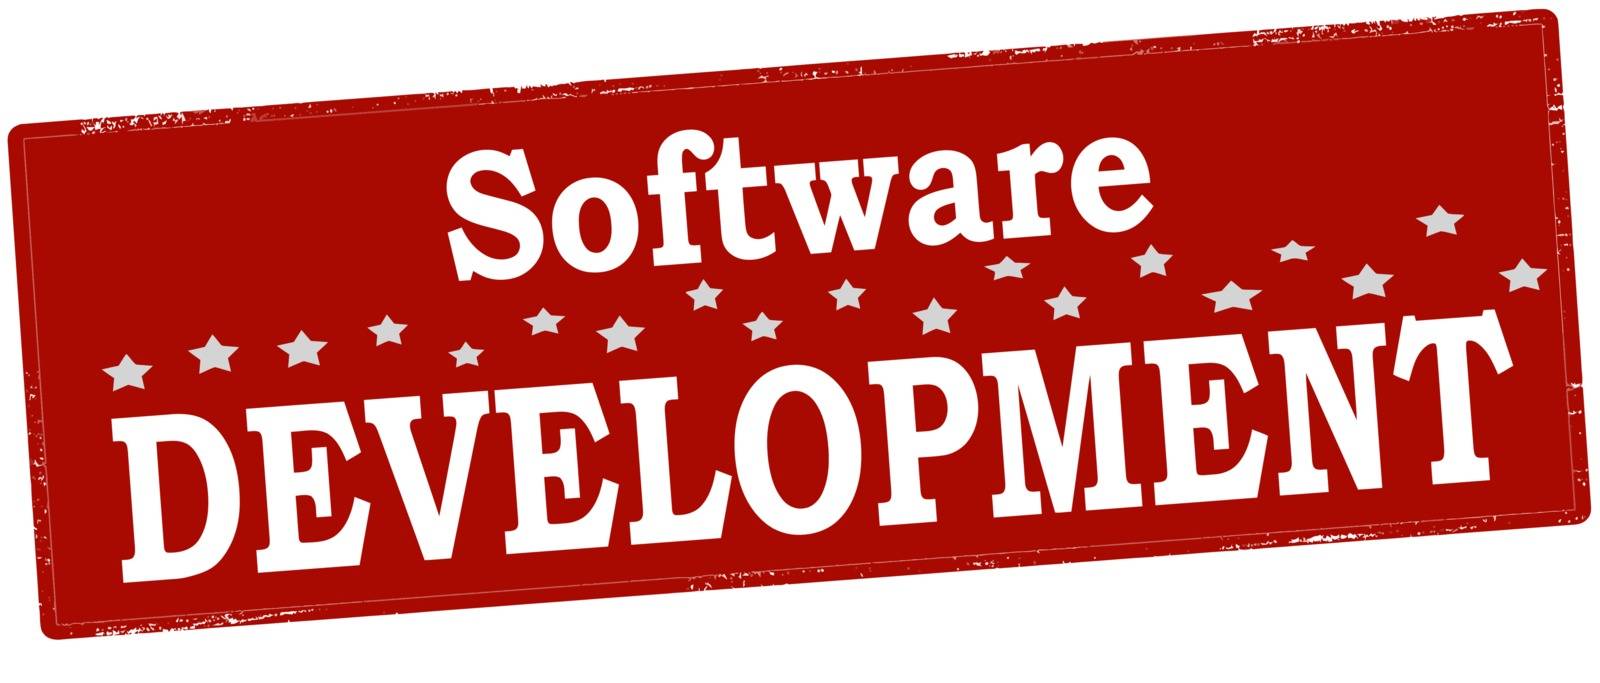 Software development by carmenbobo